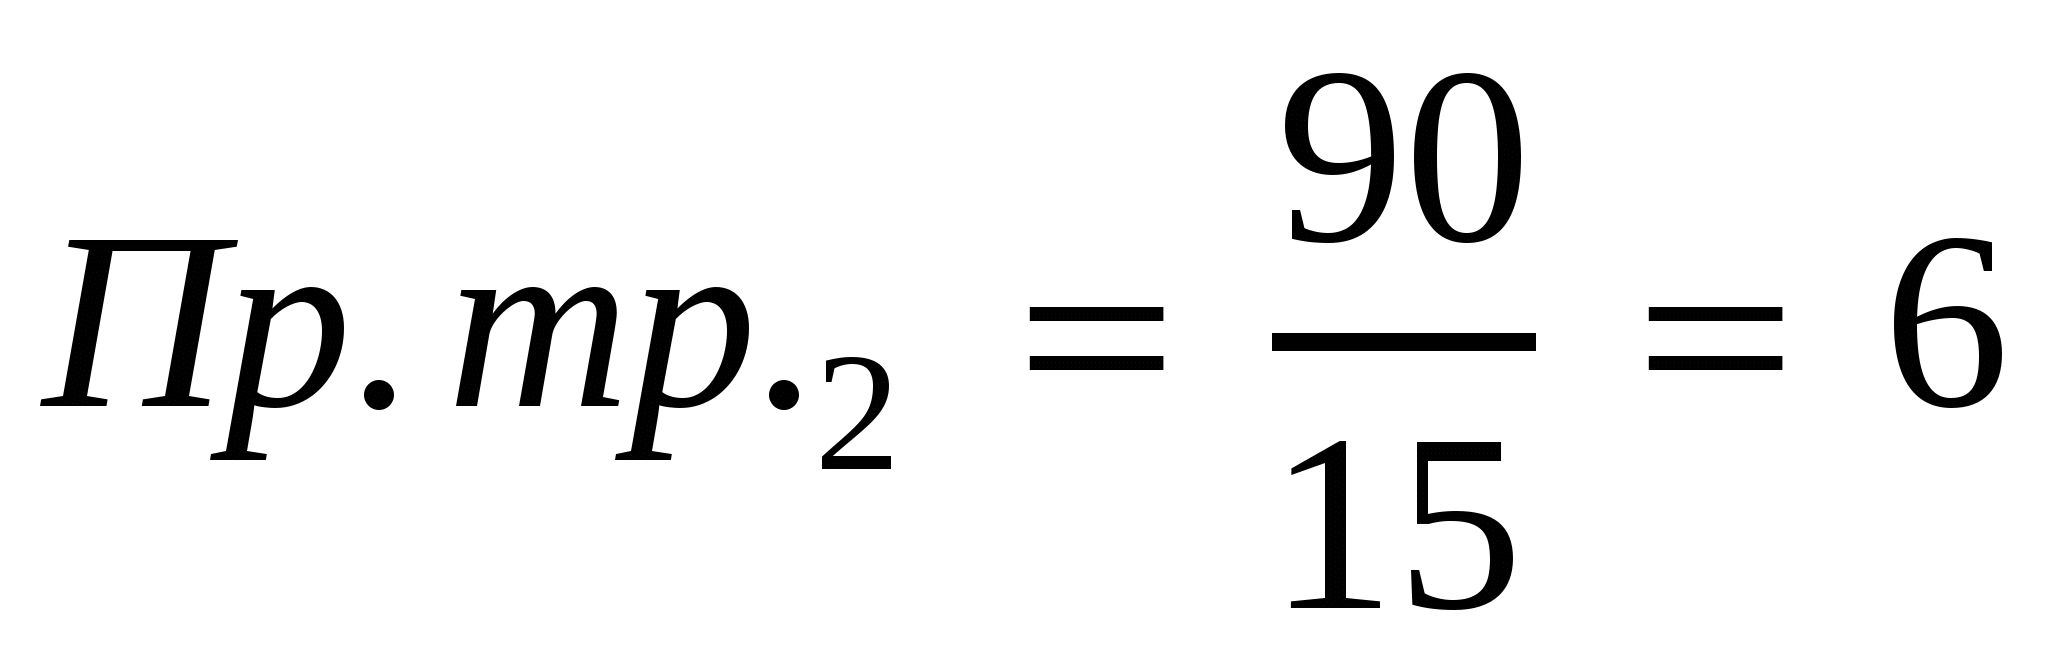 Конспект по математике на тему Деление числа в данном отношении (6 класс)